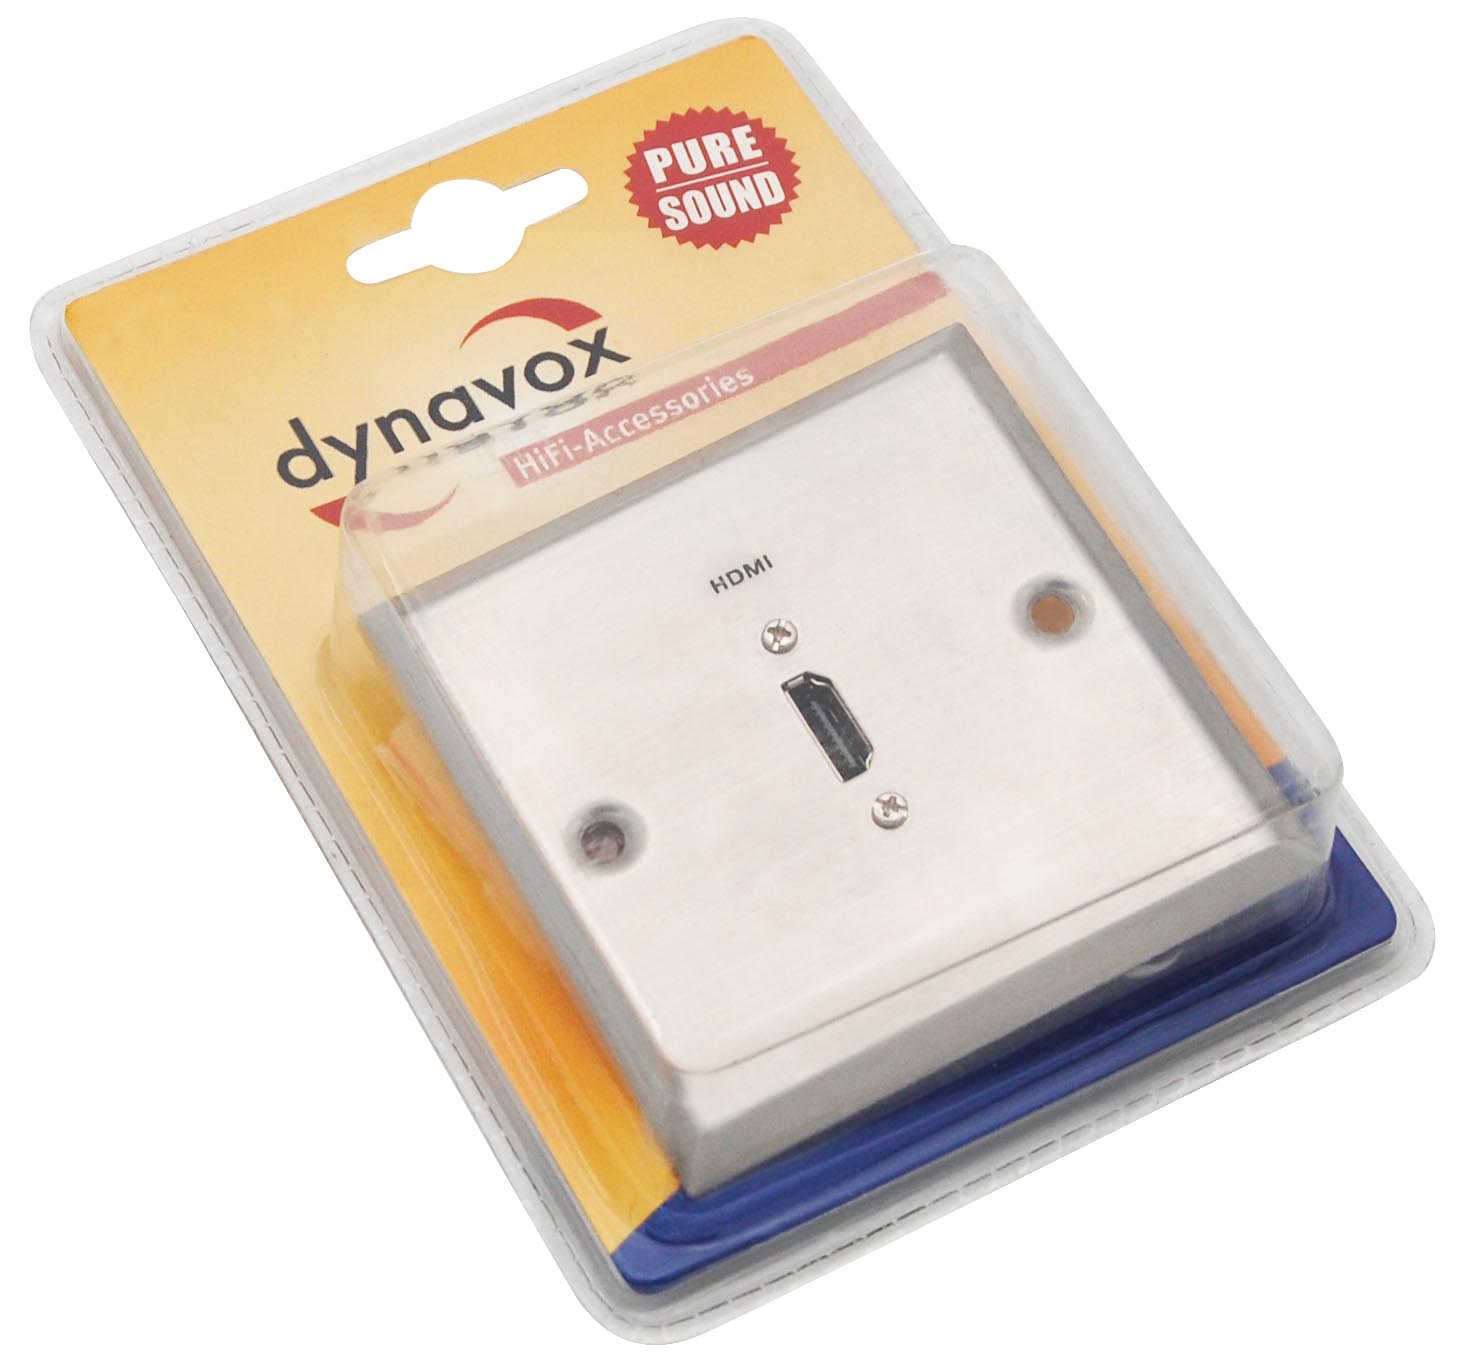 So wird die Dynaox Lautsprecherdose mit HDMI-Anschluss geliefert